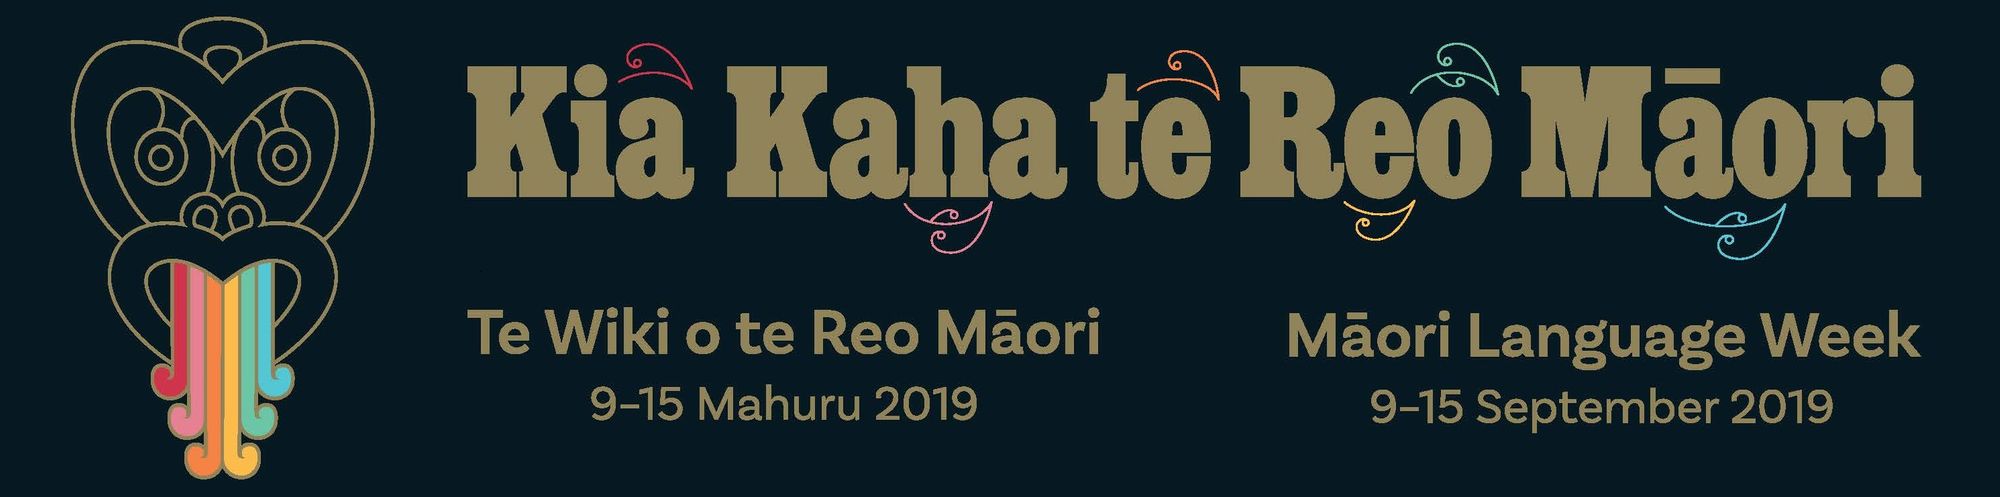 Kia Kaha te Reo Māori